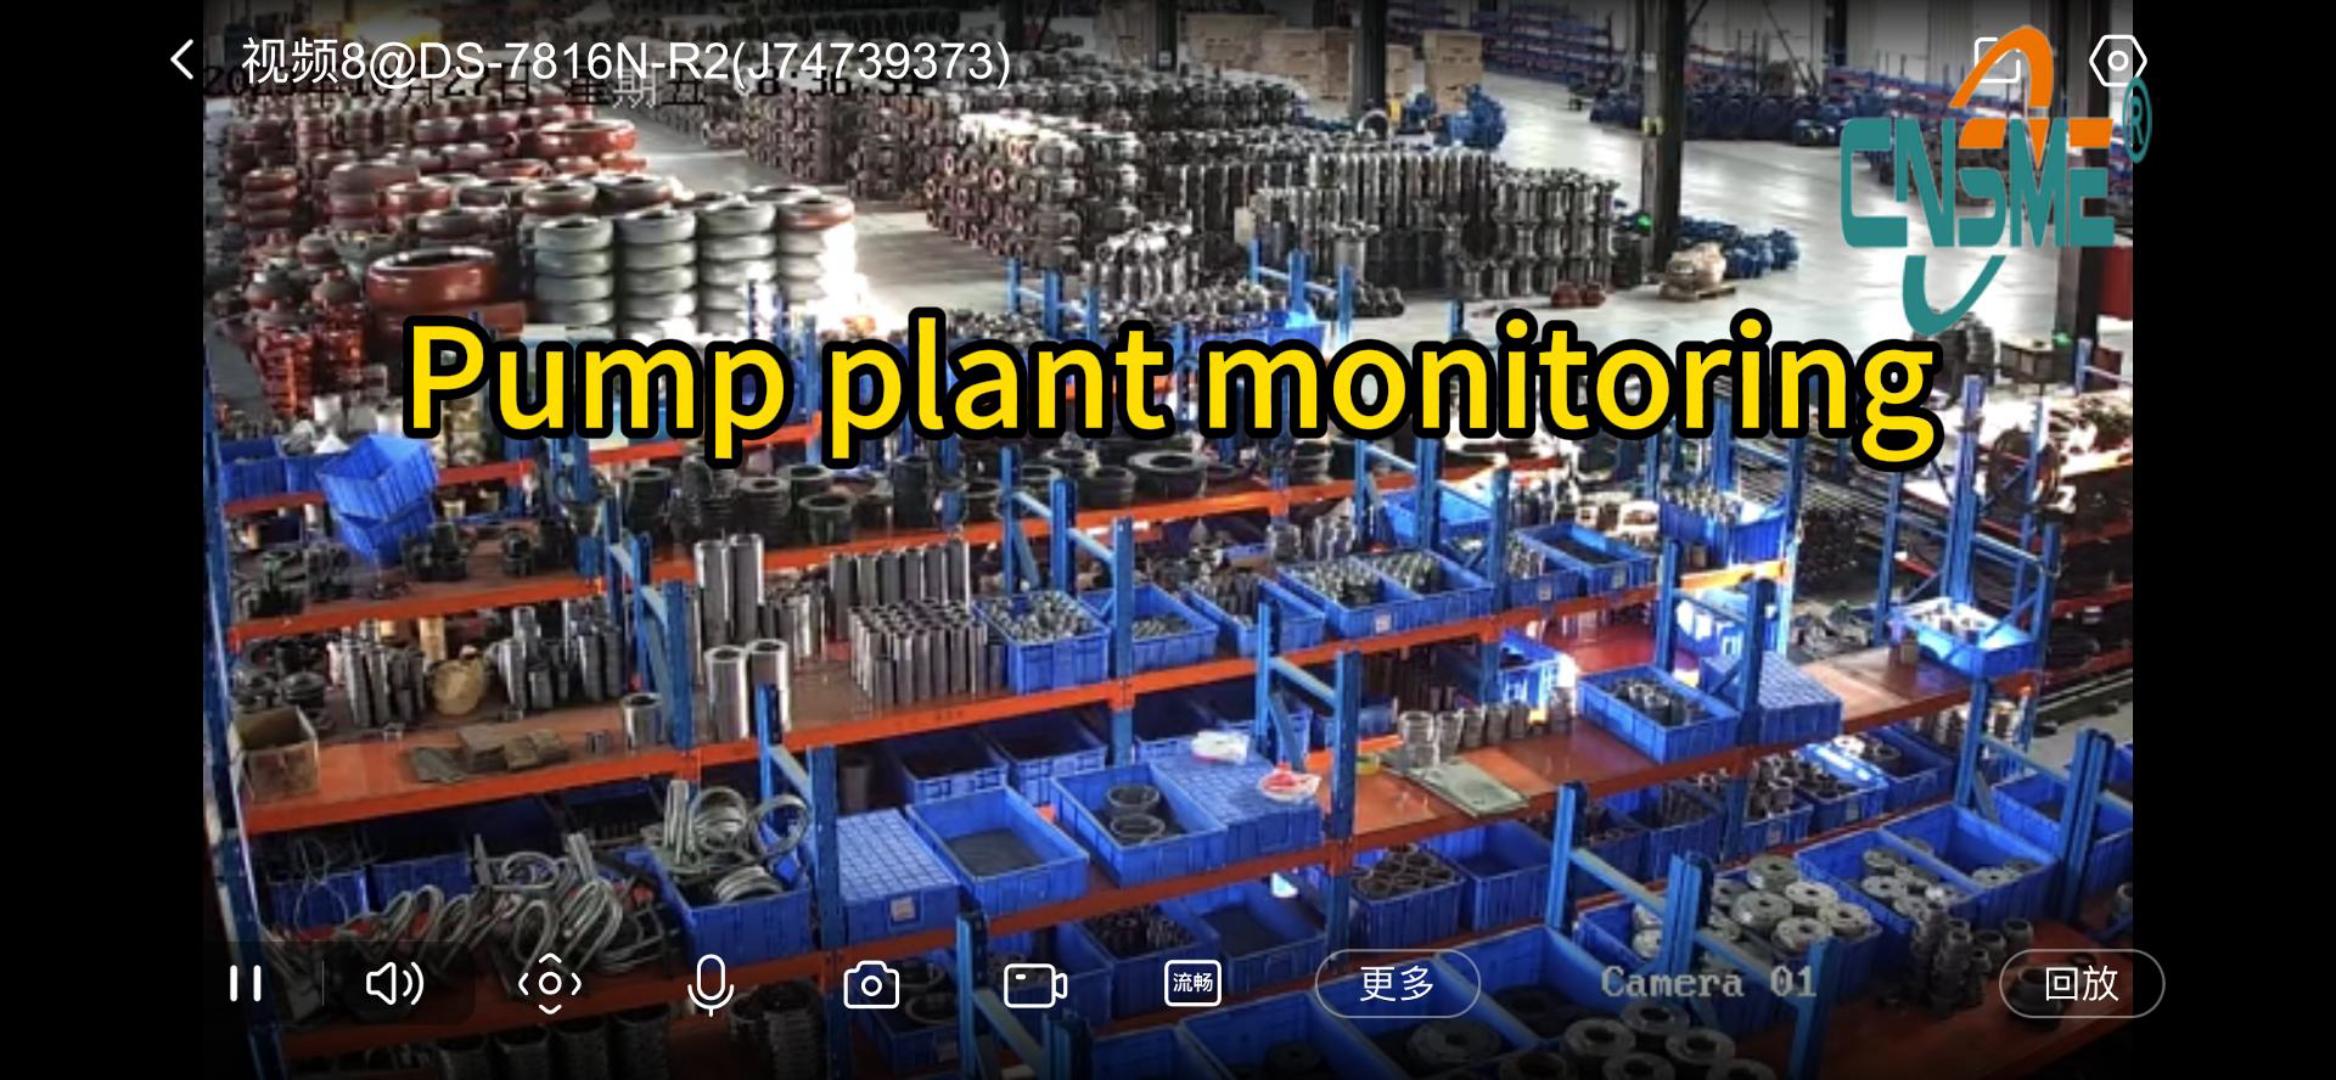 Pump plant monitoring